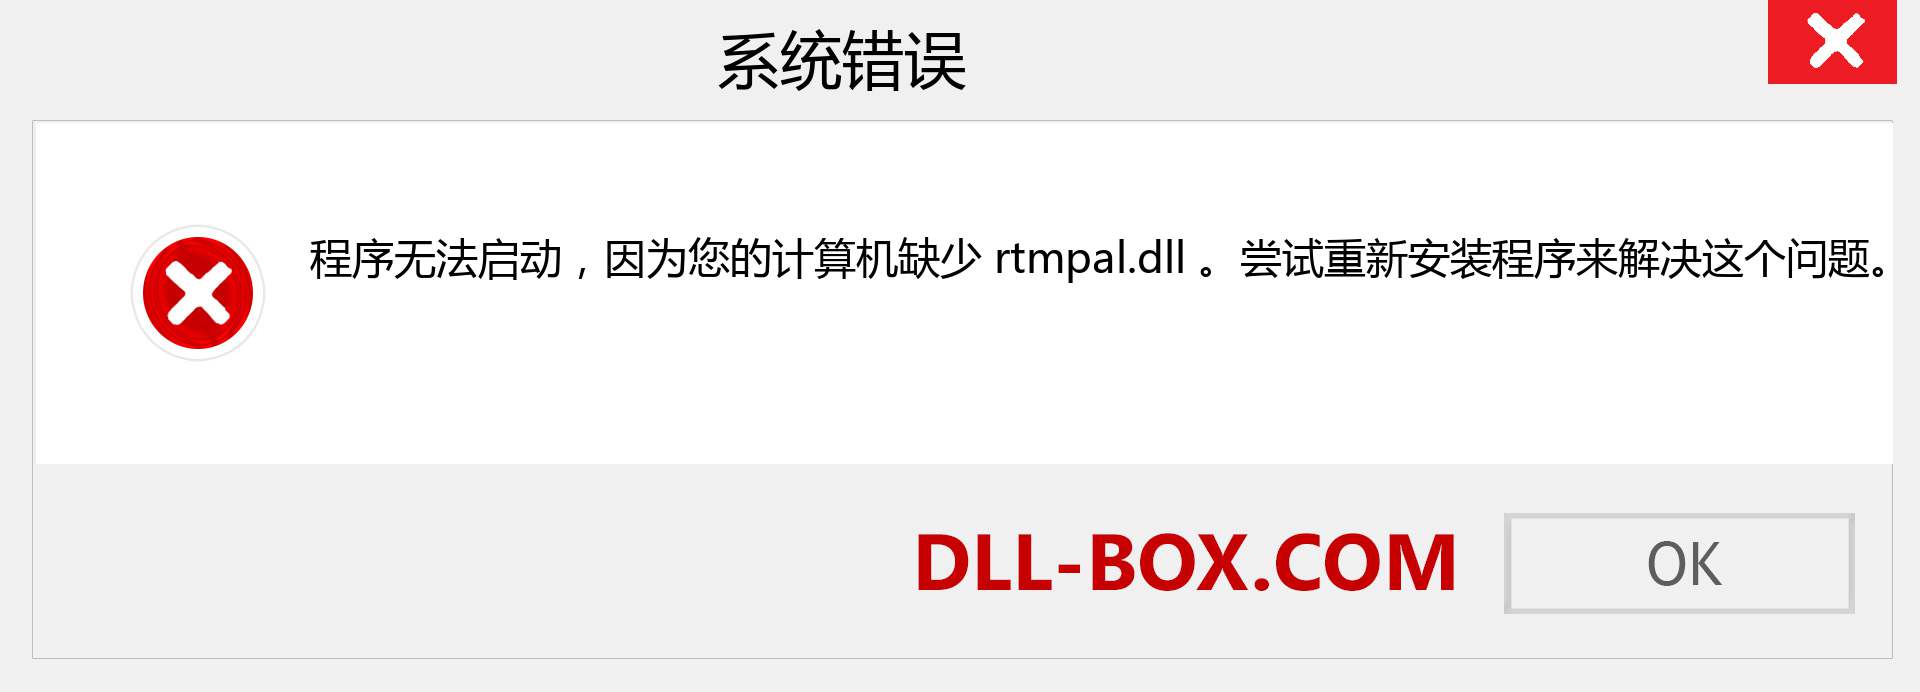 rtmpal.dll 文件丢失？。 适用于 Windows 7、8、10 的下载 - 修复 Windows、照片、图像上的 rtmpal dll 丢失错误